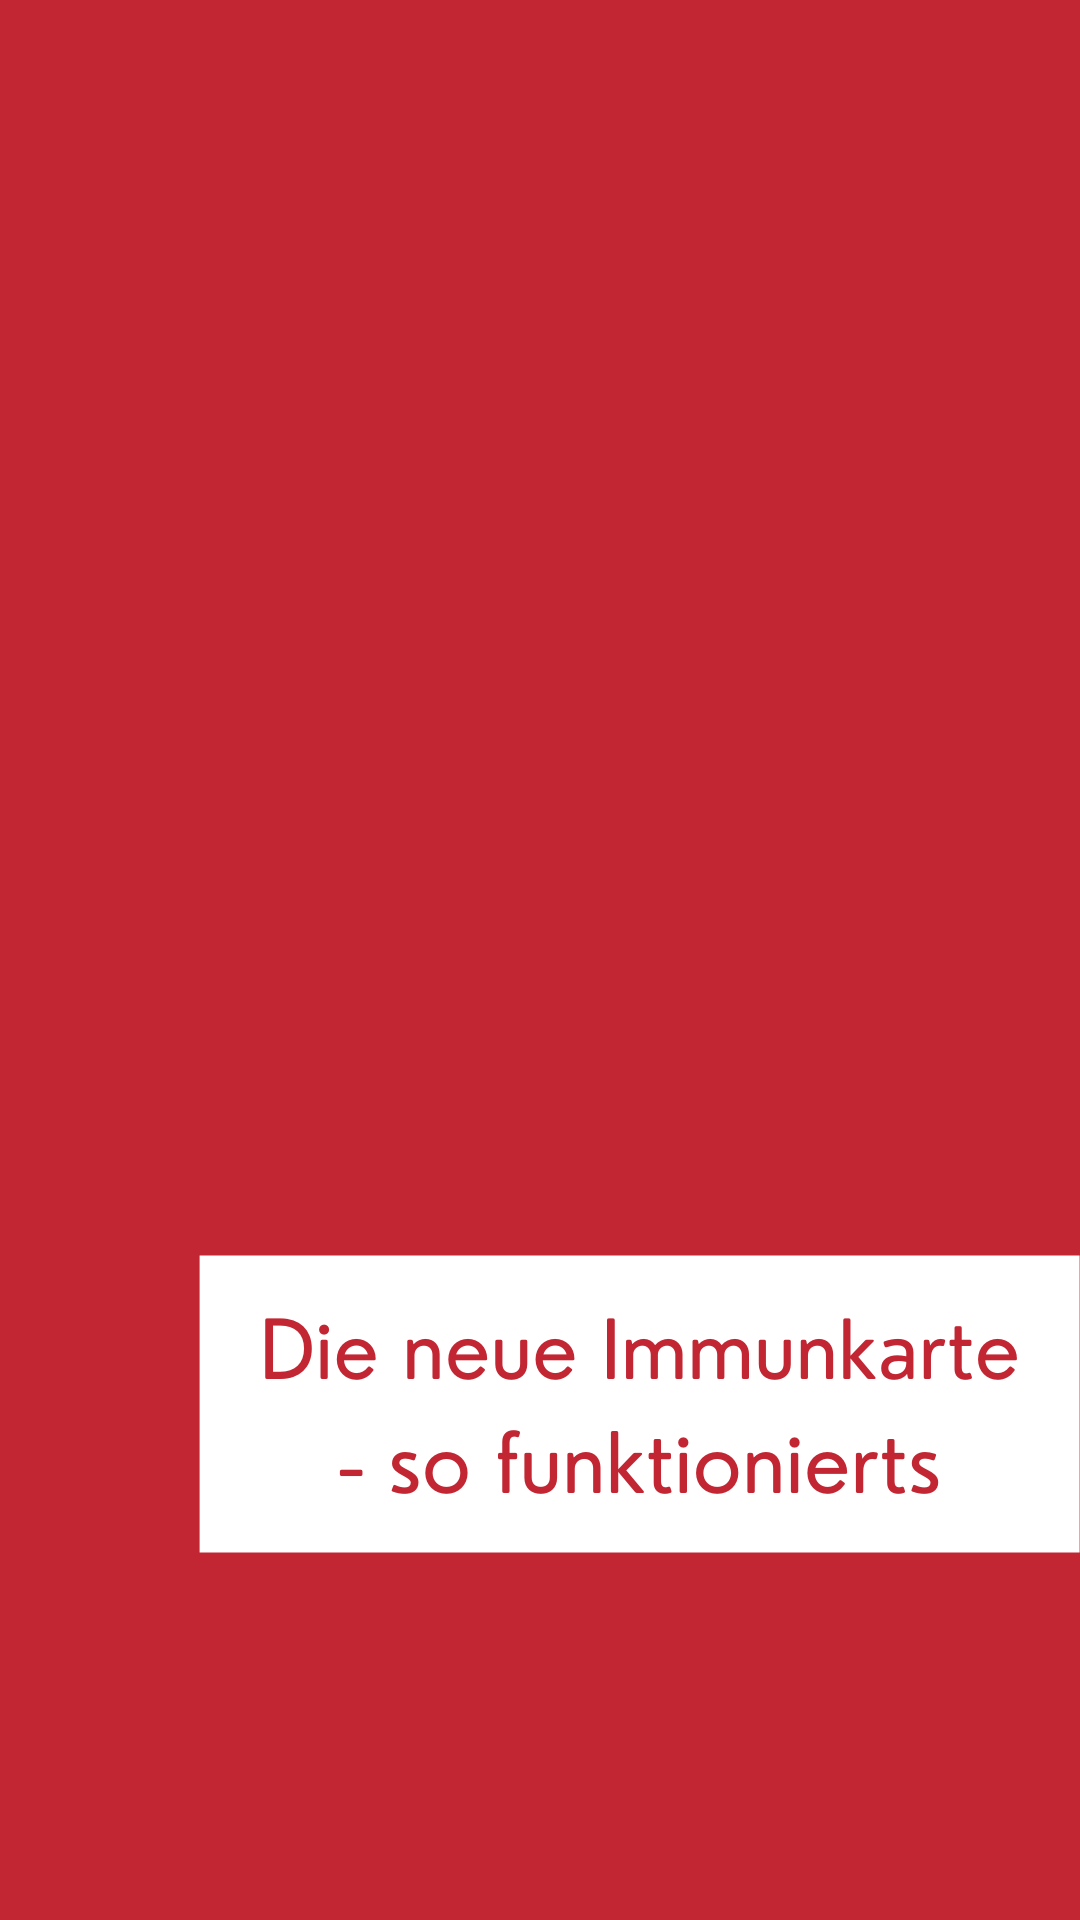 Immunkarte